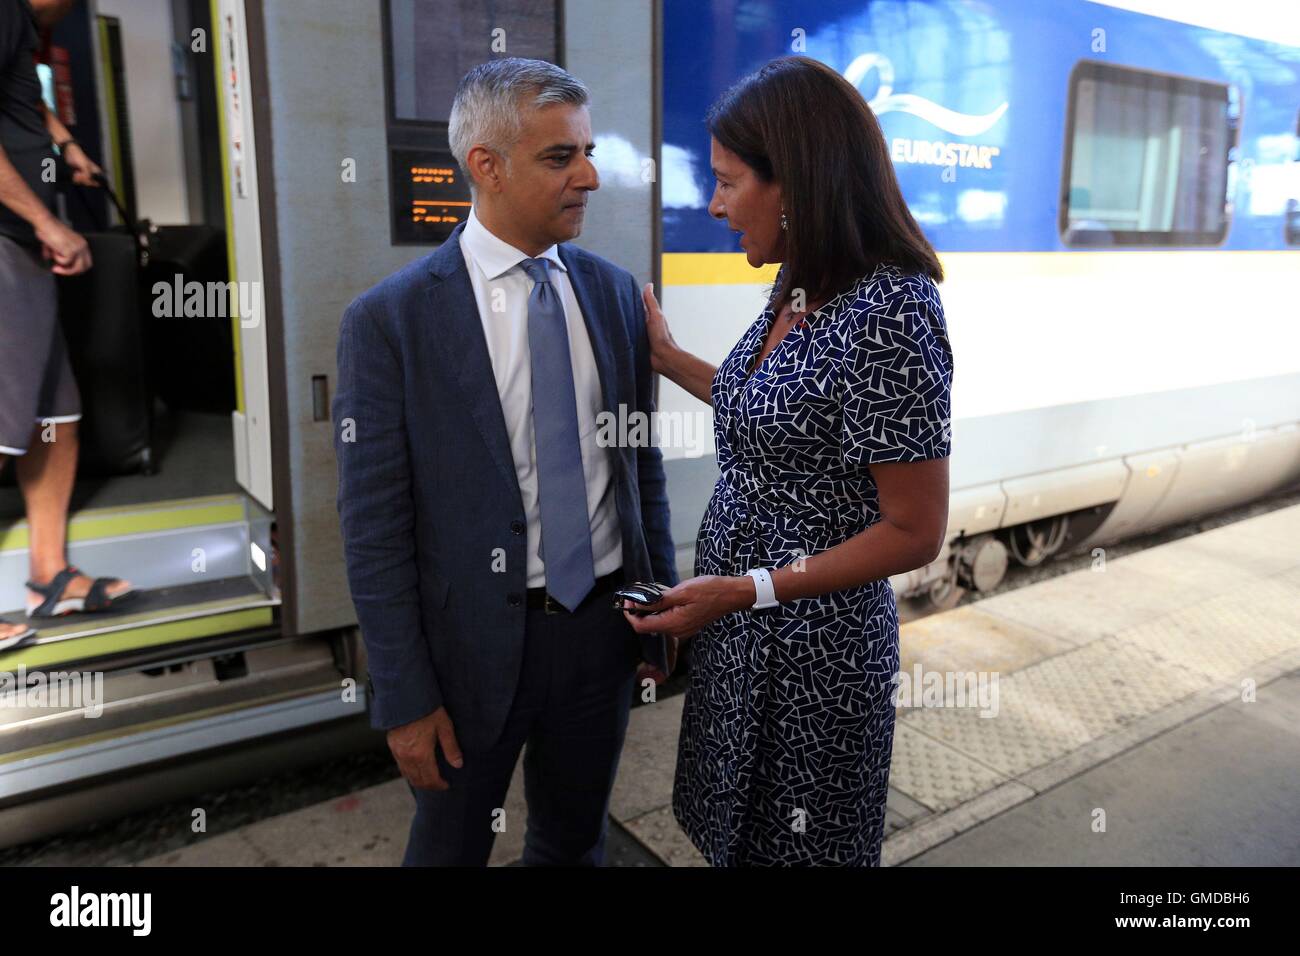 Maire de Londres Sadiq Khan est accueilli par le maire de Paris Anne Hidalgo, à Gare du Nord à Paris, France. Banque D'Images